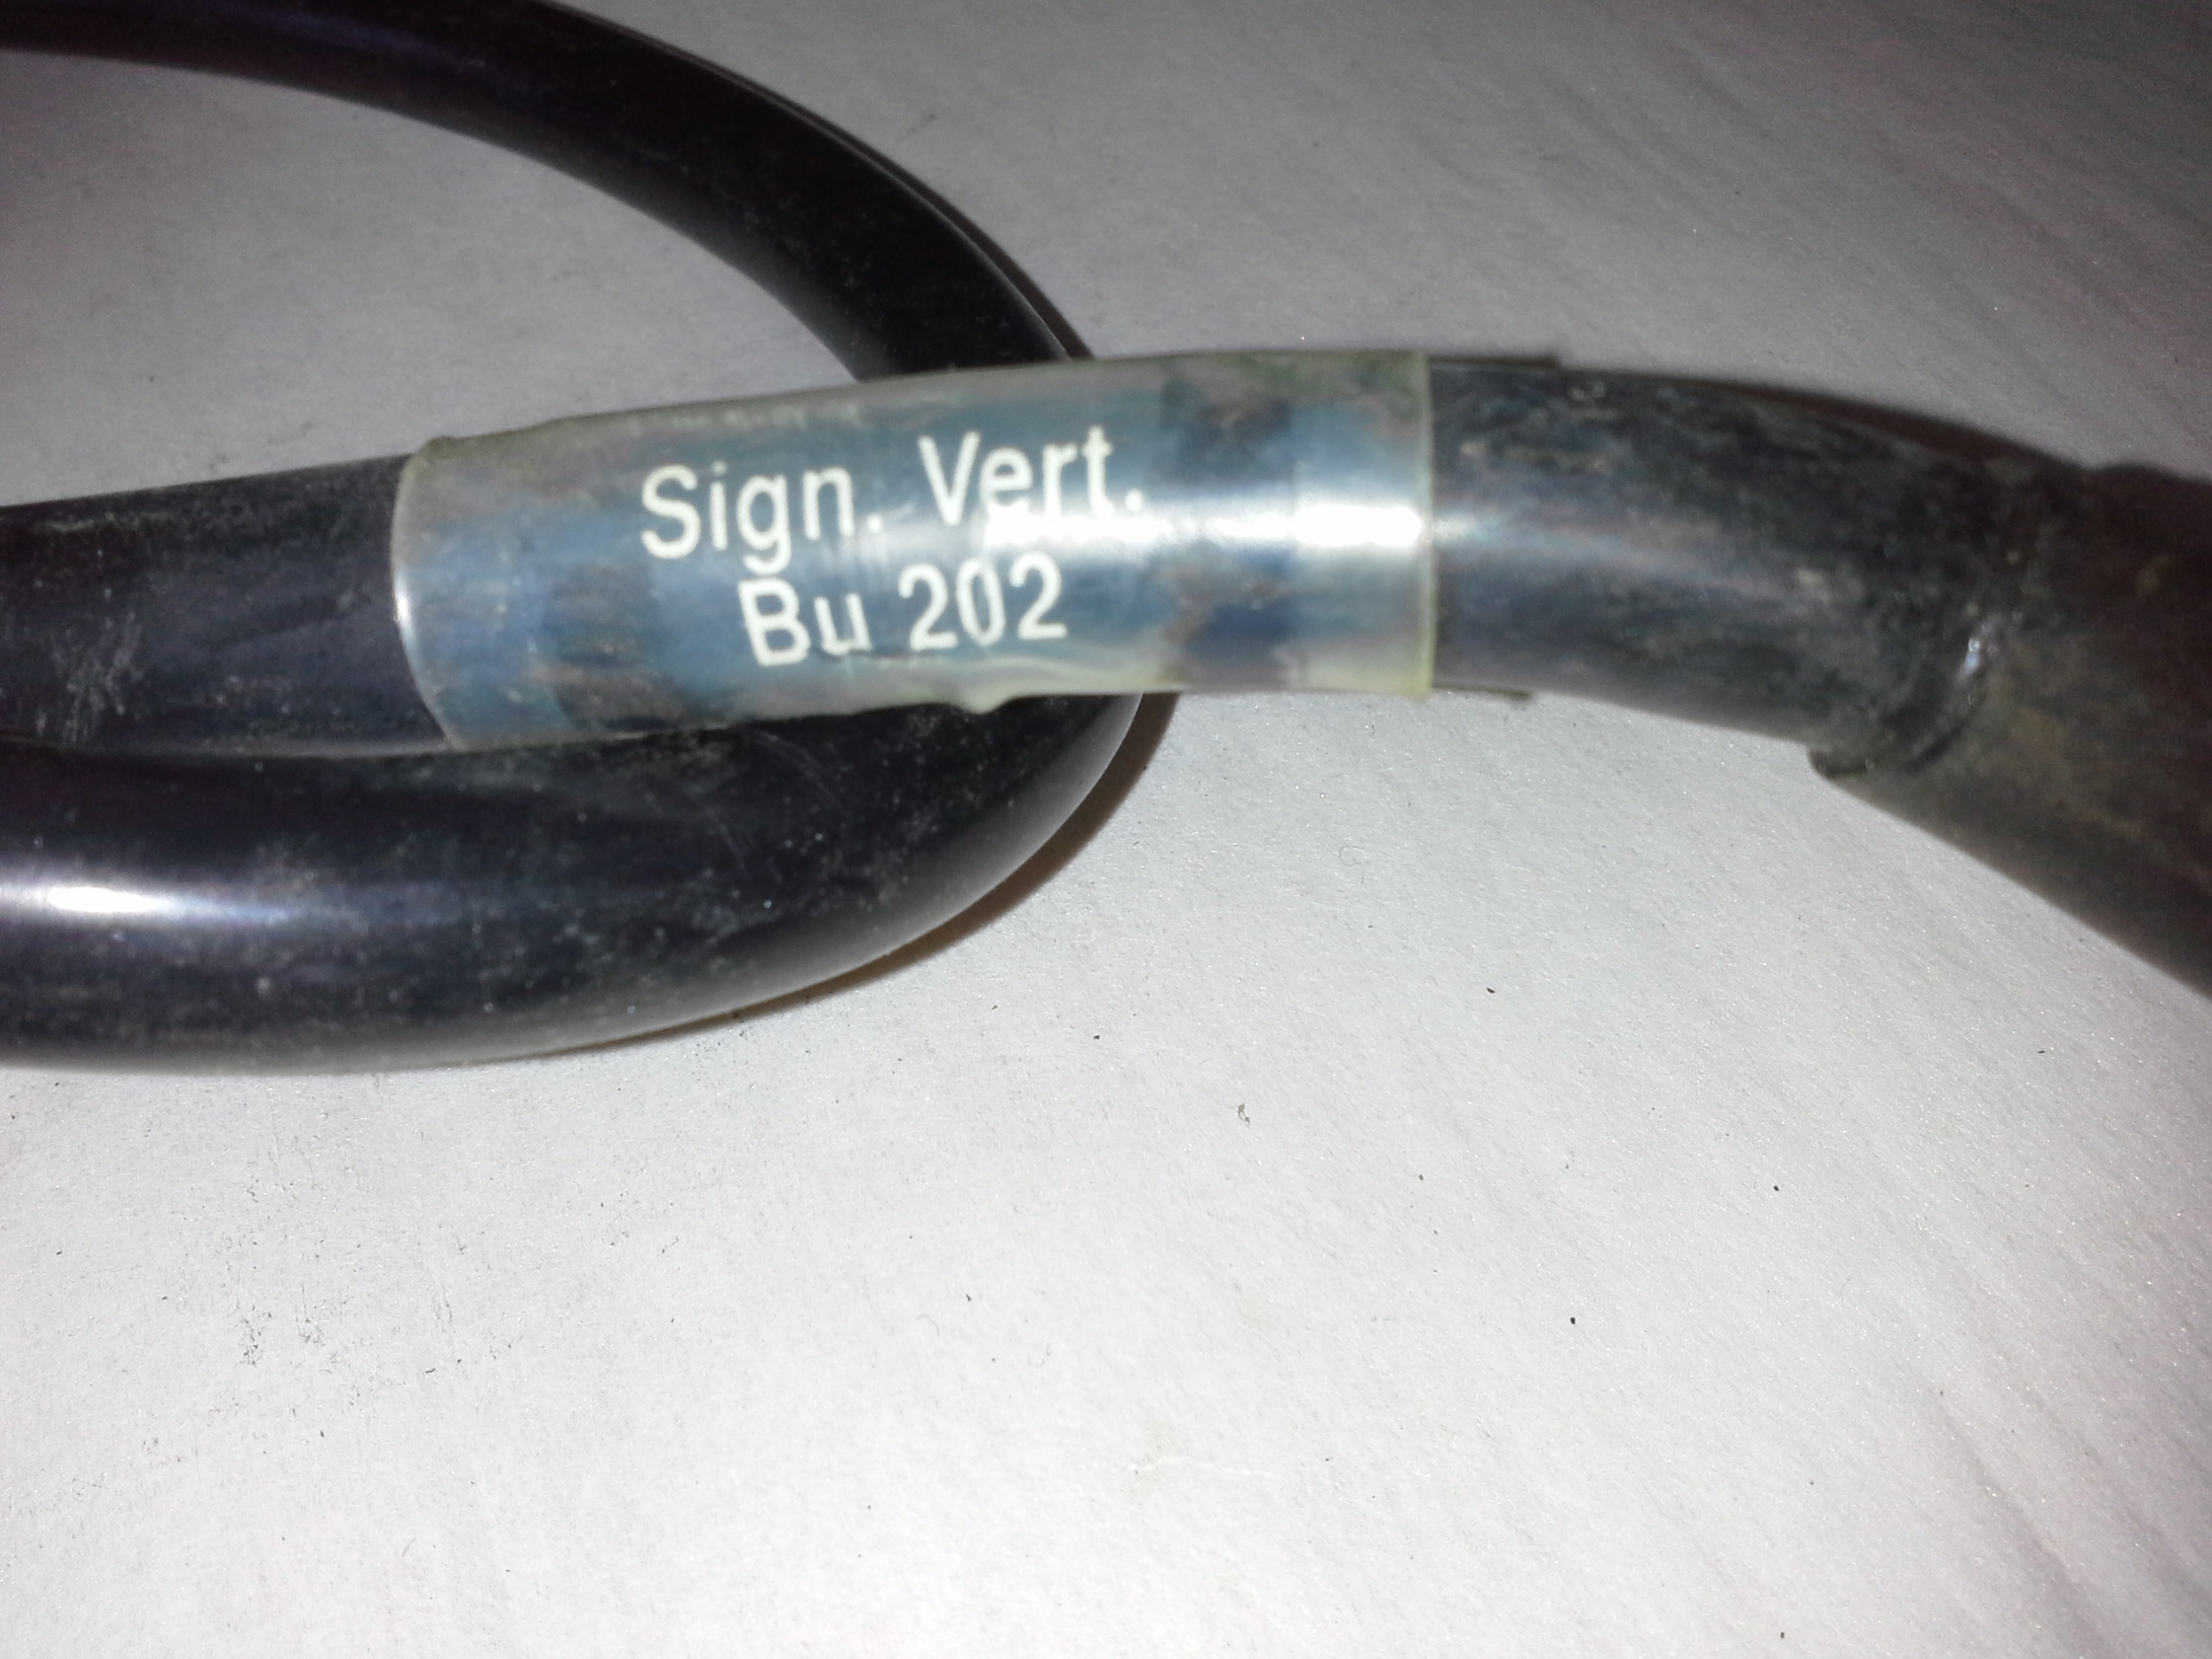 Signalverteiler - Verbindungskabel AE Dr II-BU202